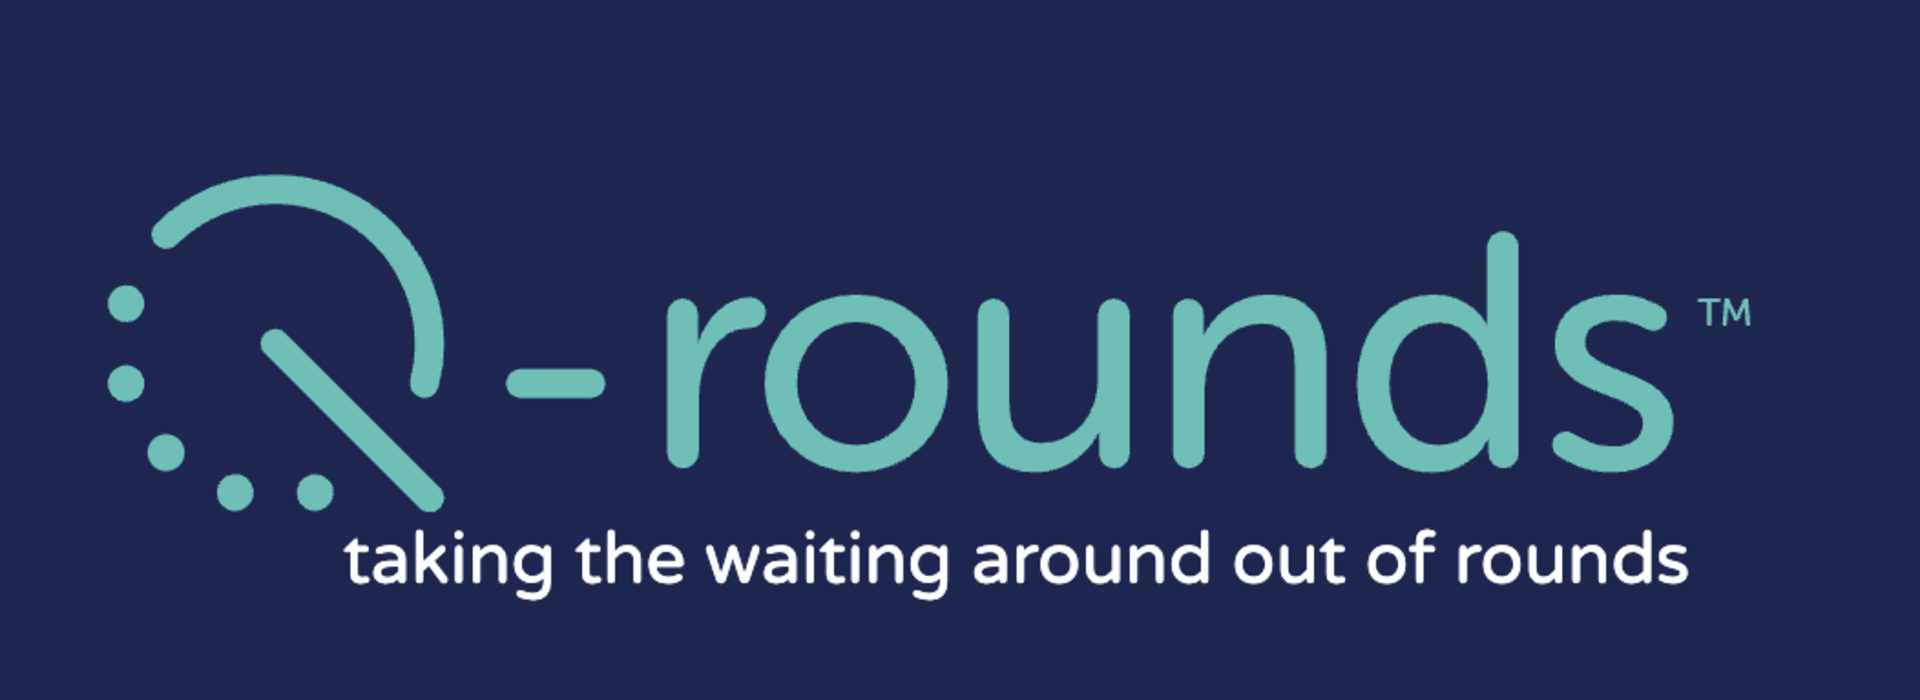 qrounds logo